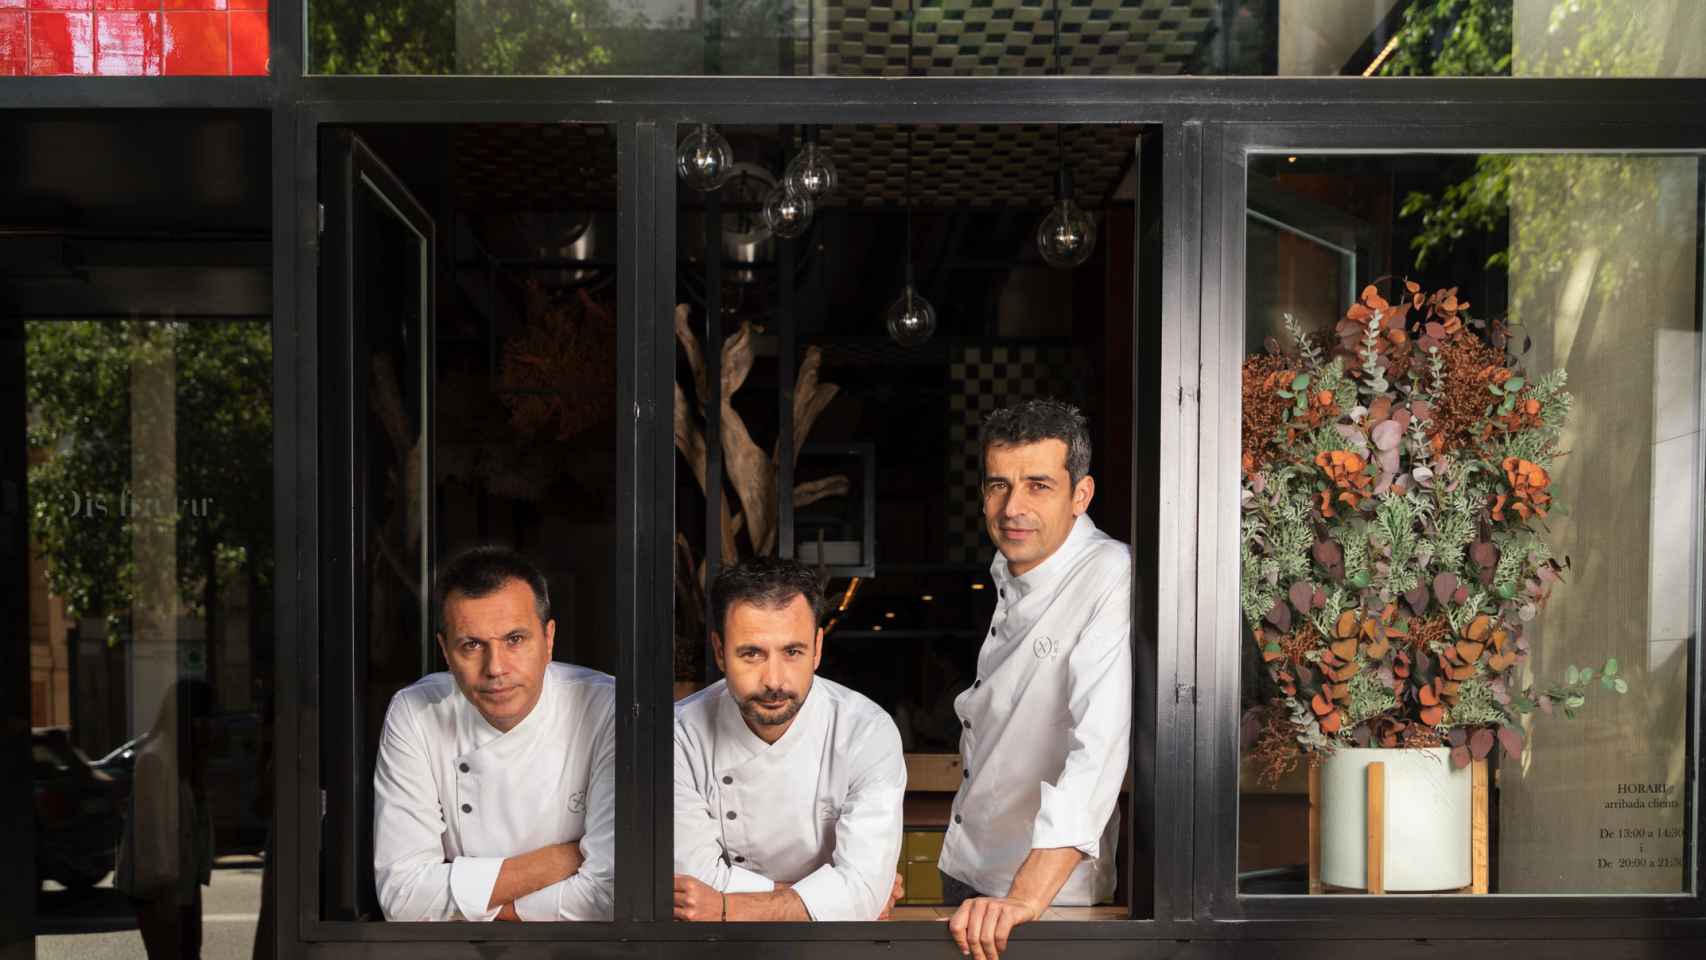 Oriol Castro, Eduard Xatruch y Mateu Casañas en su restaurante Disfrutar.